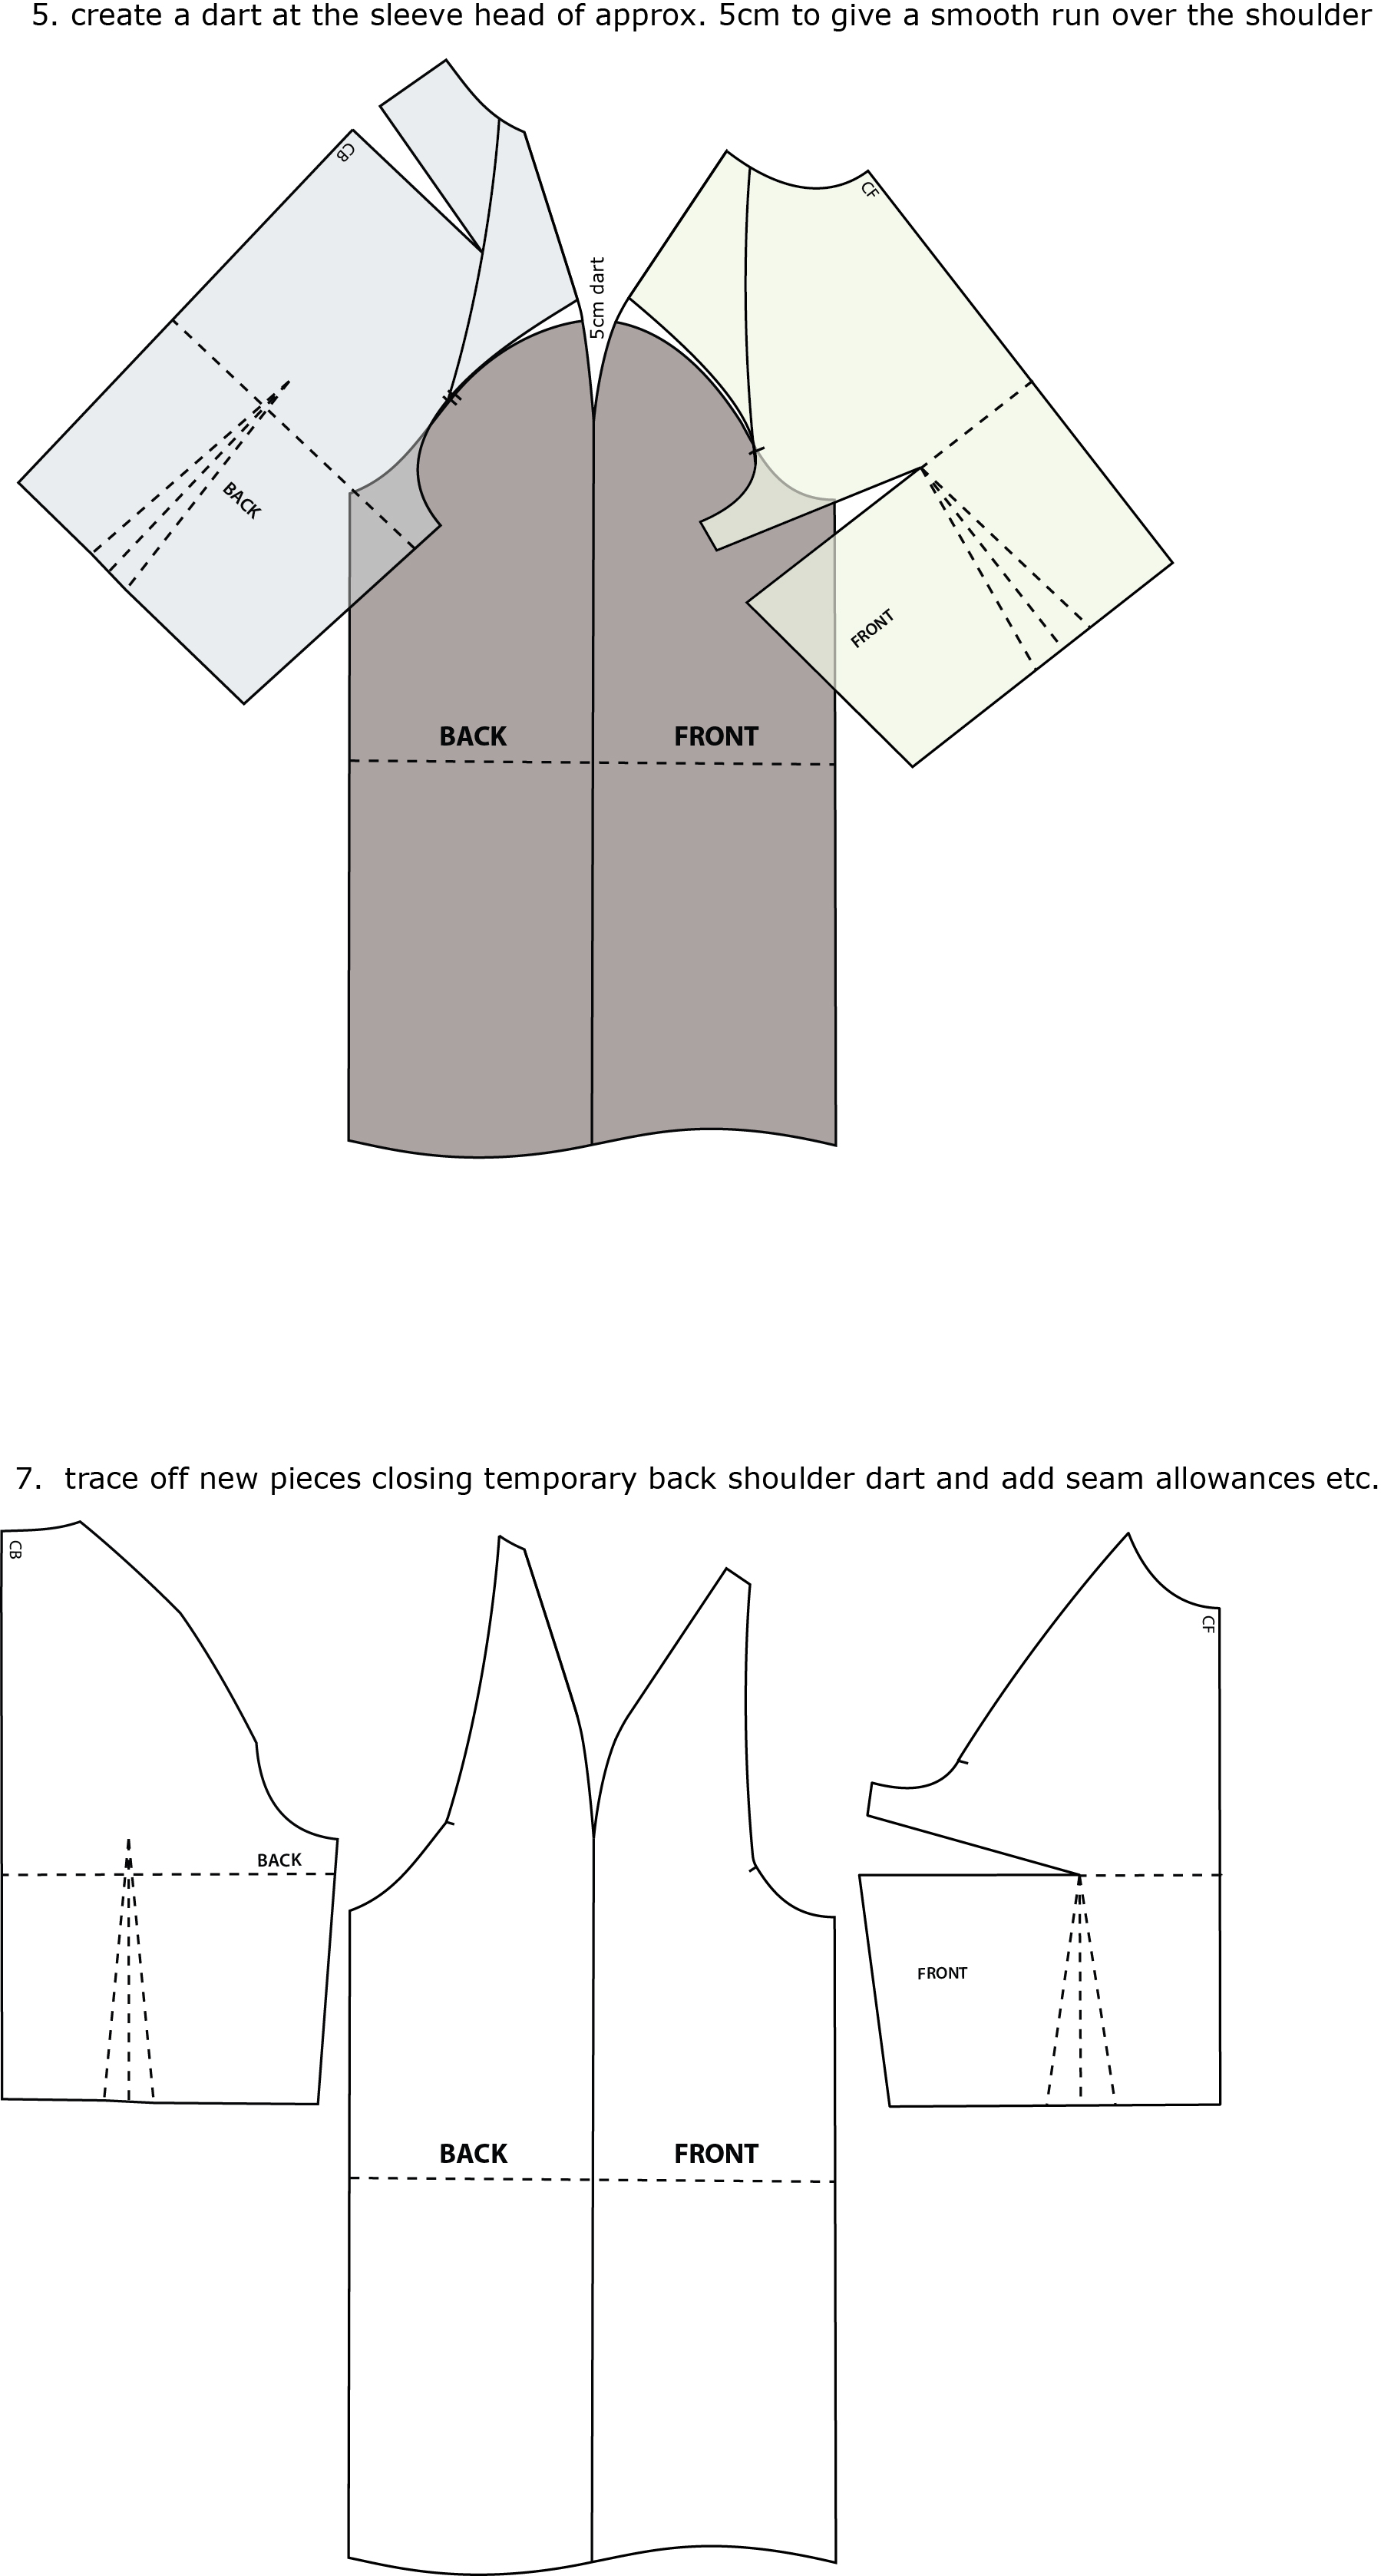 Drafting Patterns For Raglan Sleeves - Leena&apos;s.com: Pa
tternMaker